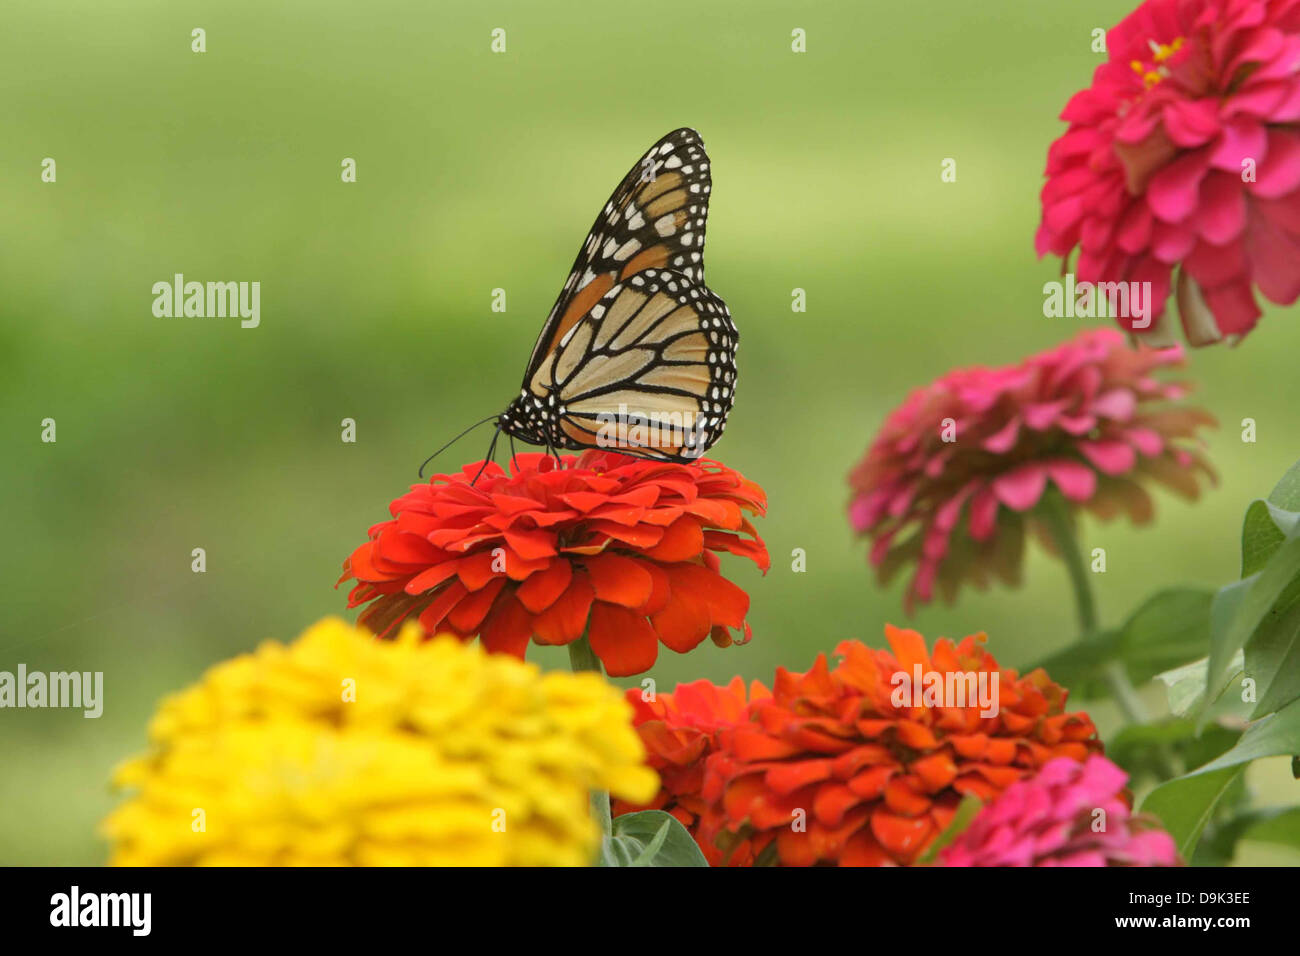 La monarch ali di farfalla arancione nero giallo rosa petalo di fiore foglie fogliame stelo garden Foto Stock